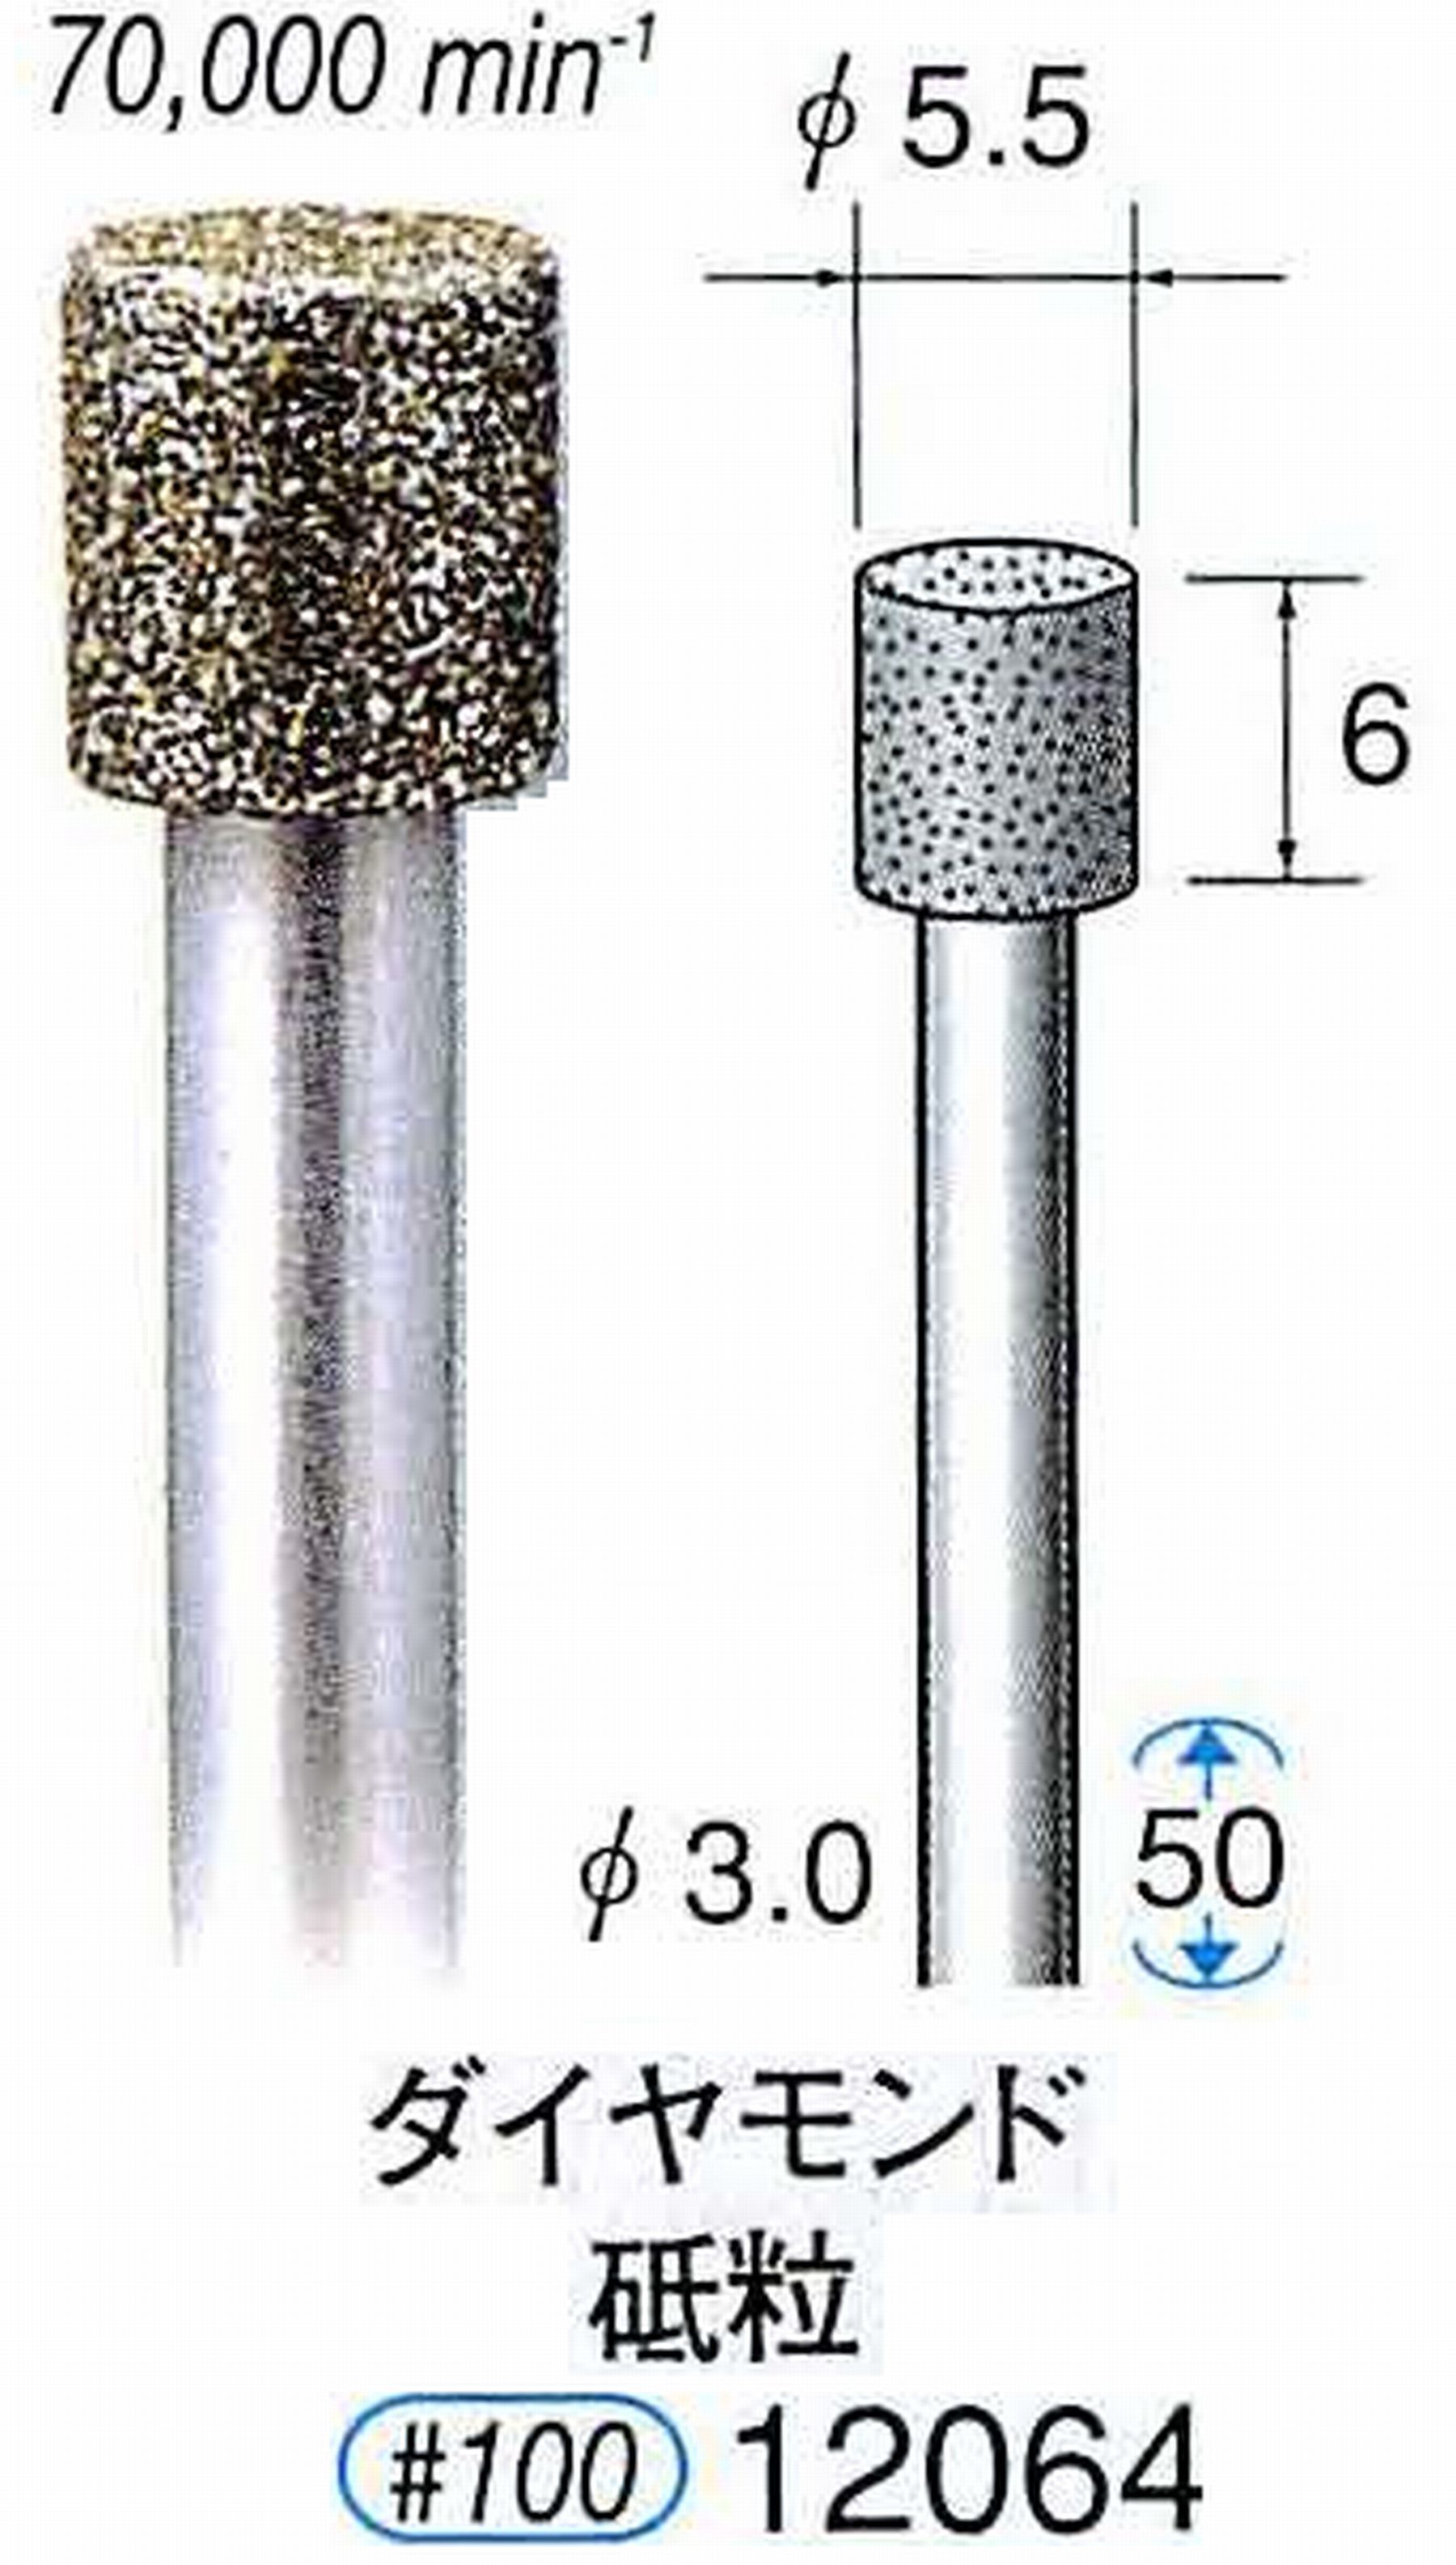 ナカニシ/NAKANISHI 電着ダイヤモンド ダイヤモンド砥粒 軸径(シャンク)φ3.0mm 12064